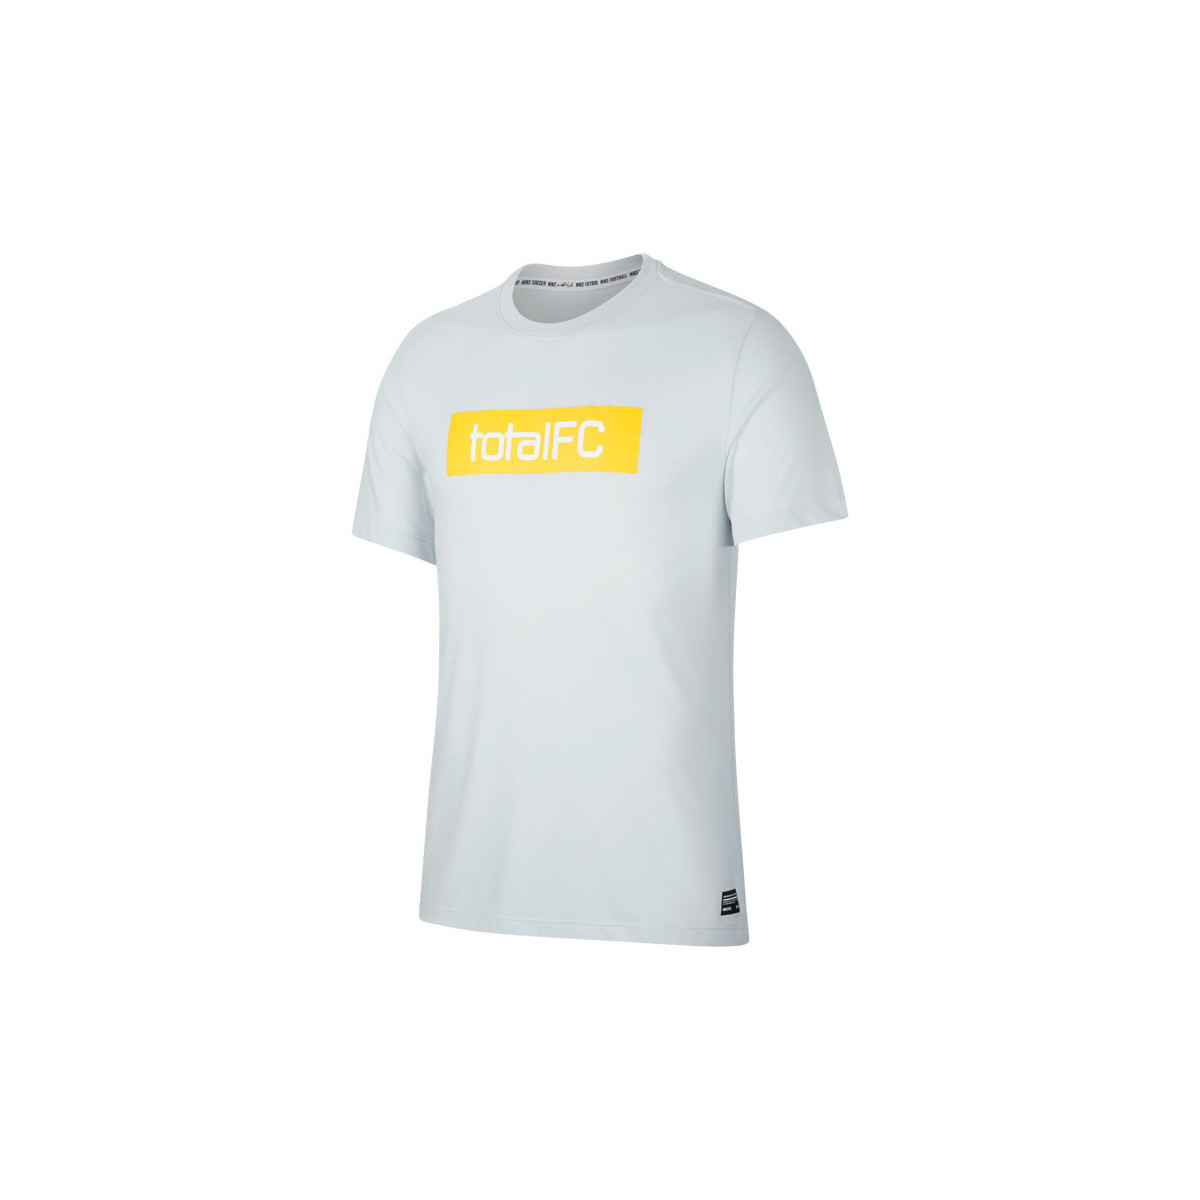 Textil Muži Trička s krátkým rukávem Nike FC Dry Tee Seasonal Bílá